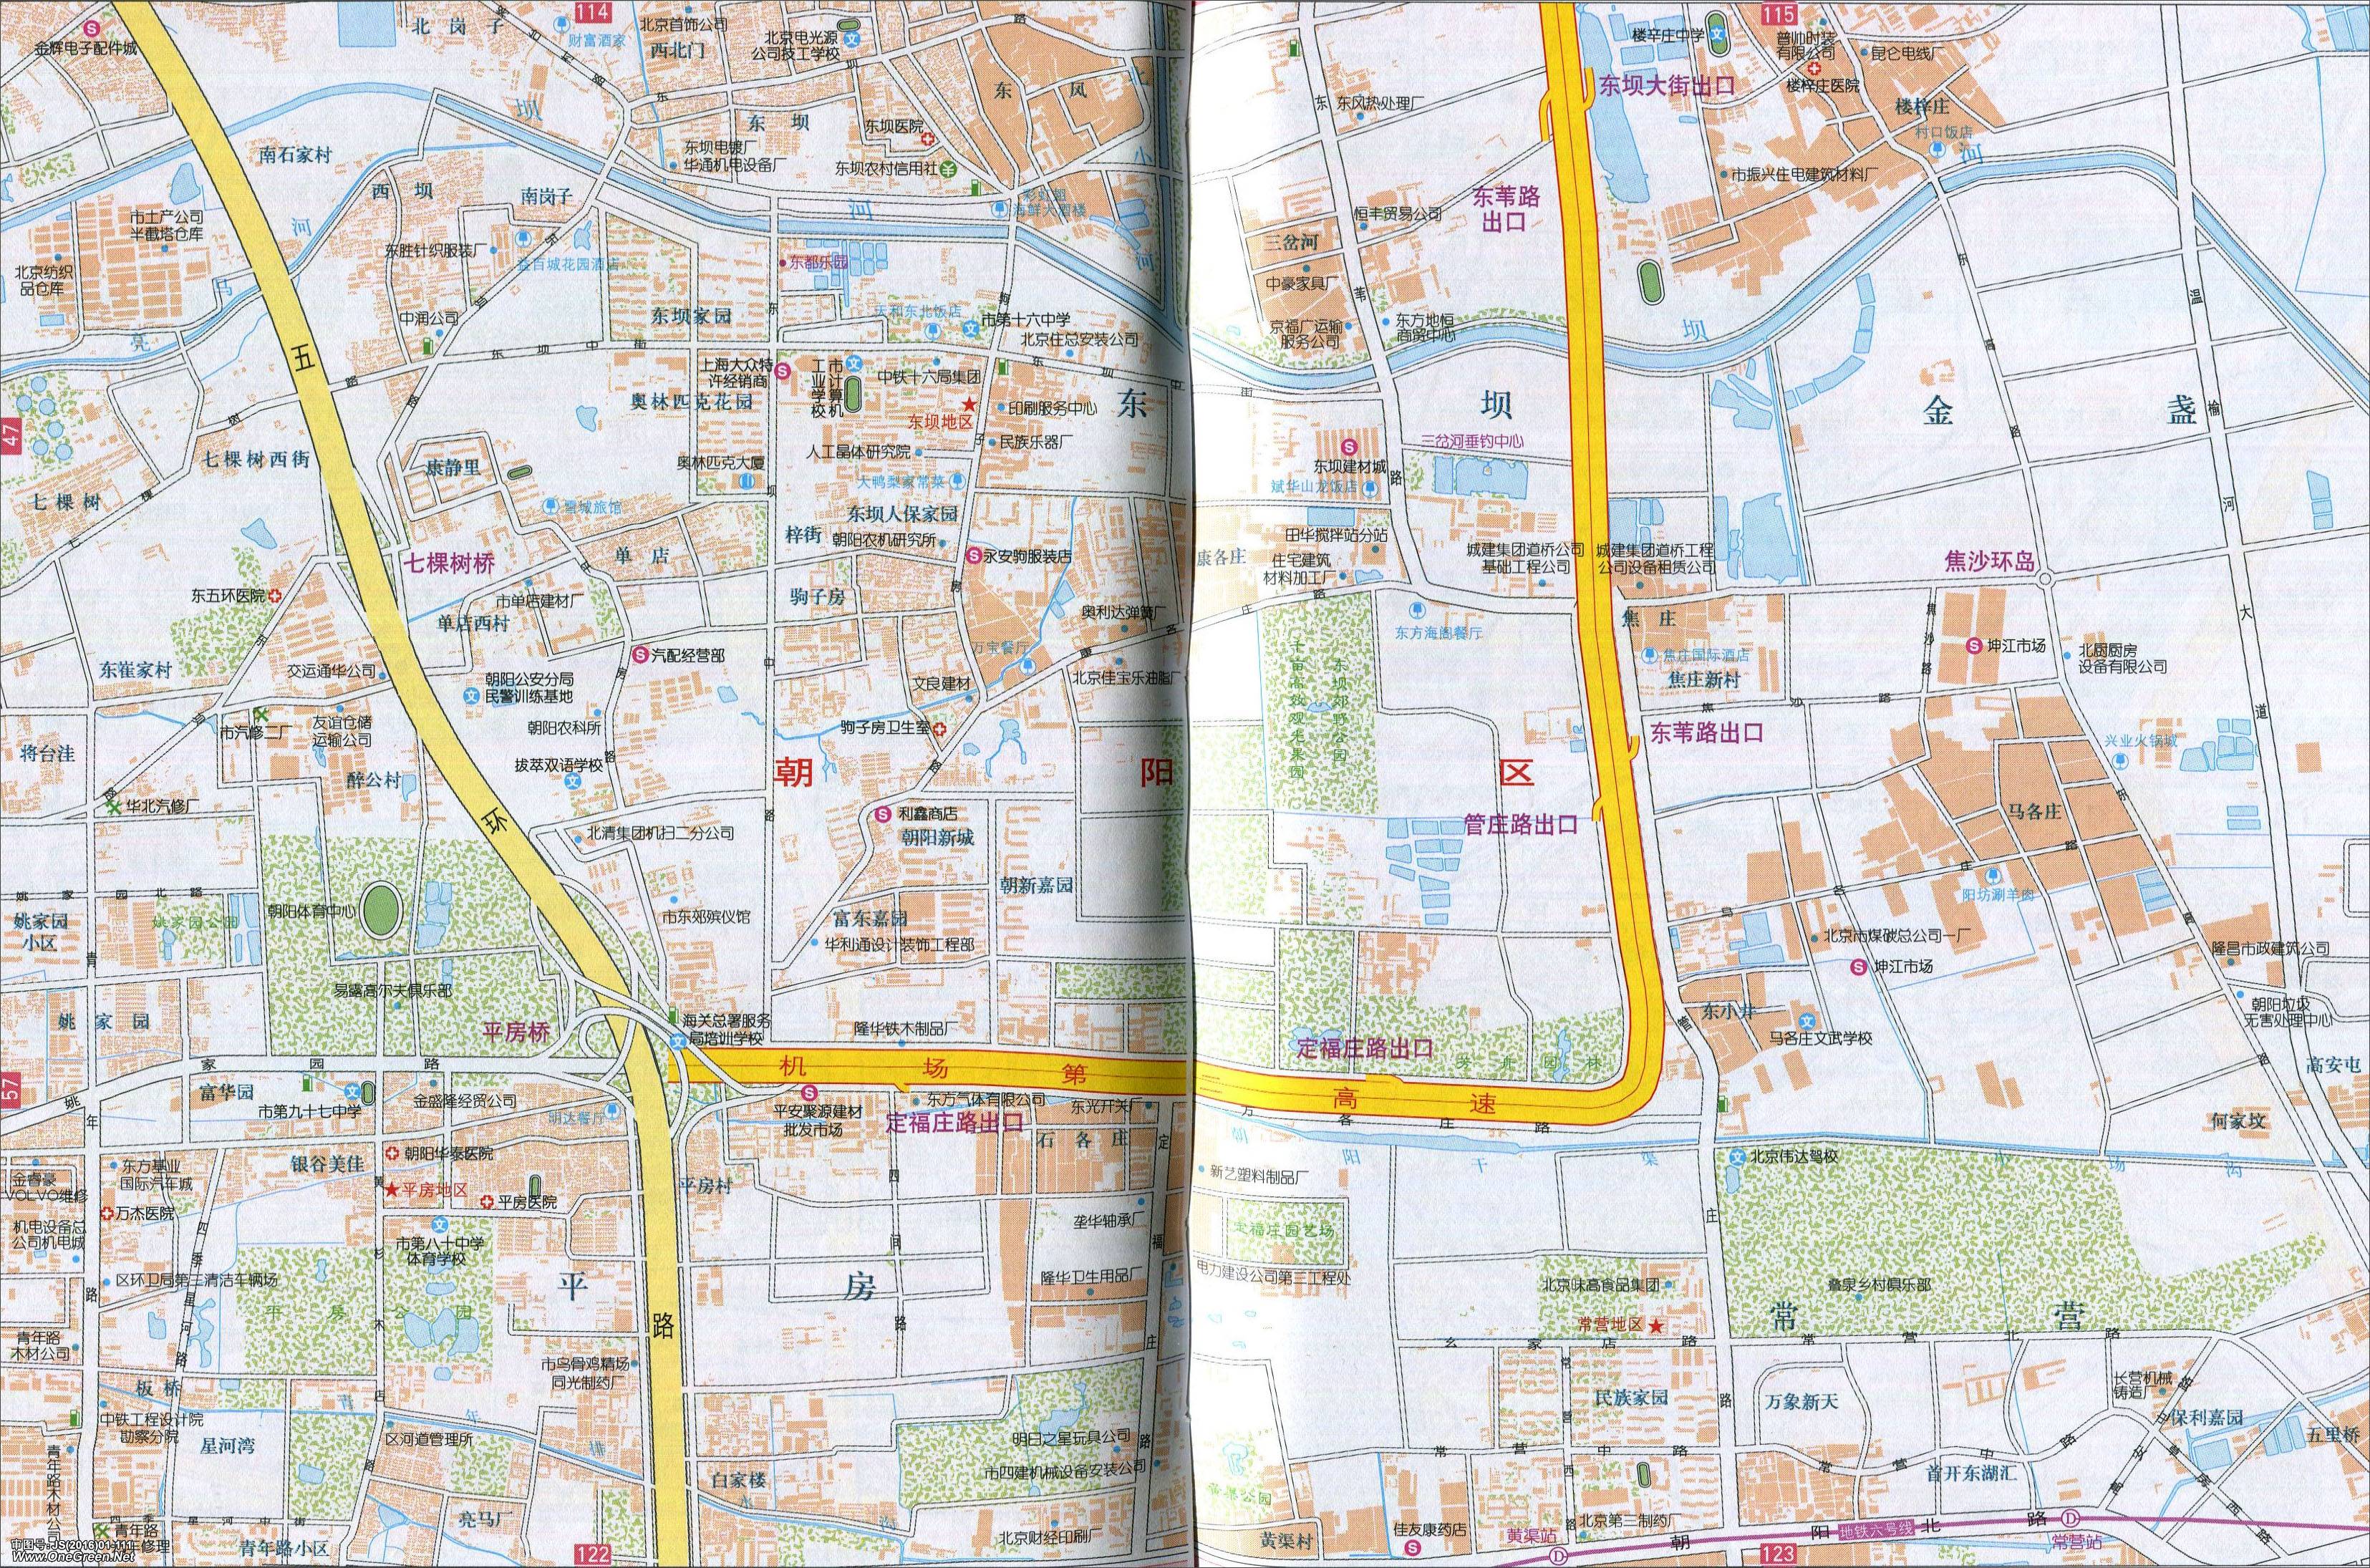 北京大屯地图  | 北京城区地图集 |  下一张地图: 北京朝阳公园地图图片